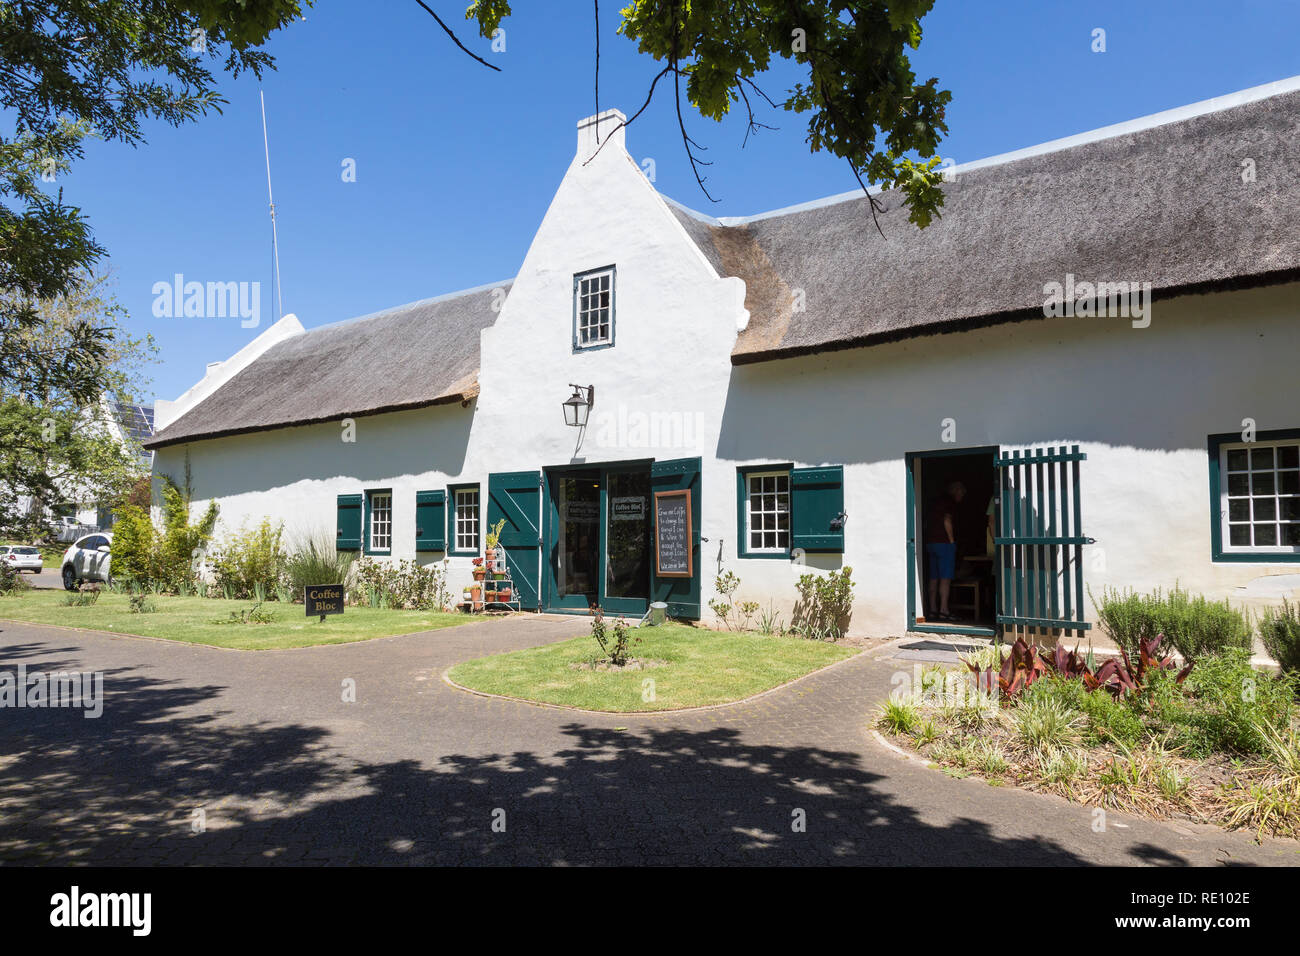 Buitenverwachting Weingut und Restaurant, Constantia, Cape Town, Western Cape, Südafrika. Alte kap-holländische Architektur. Stockfoto